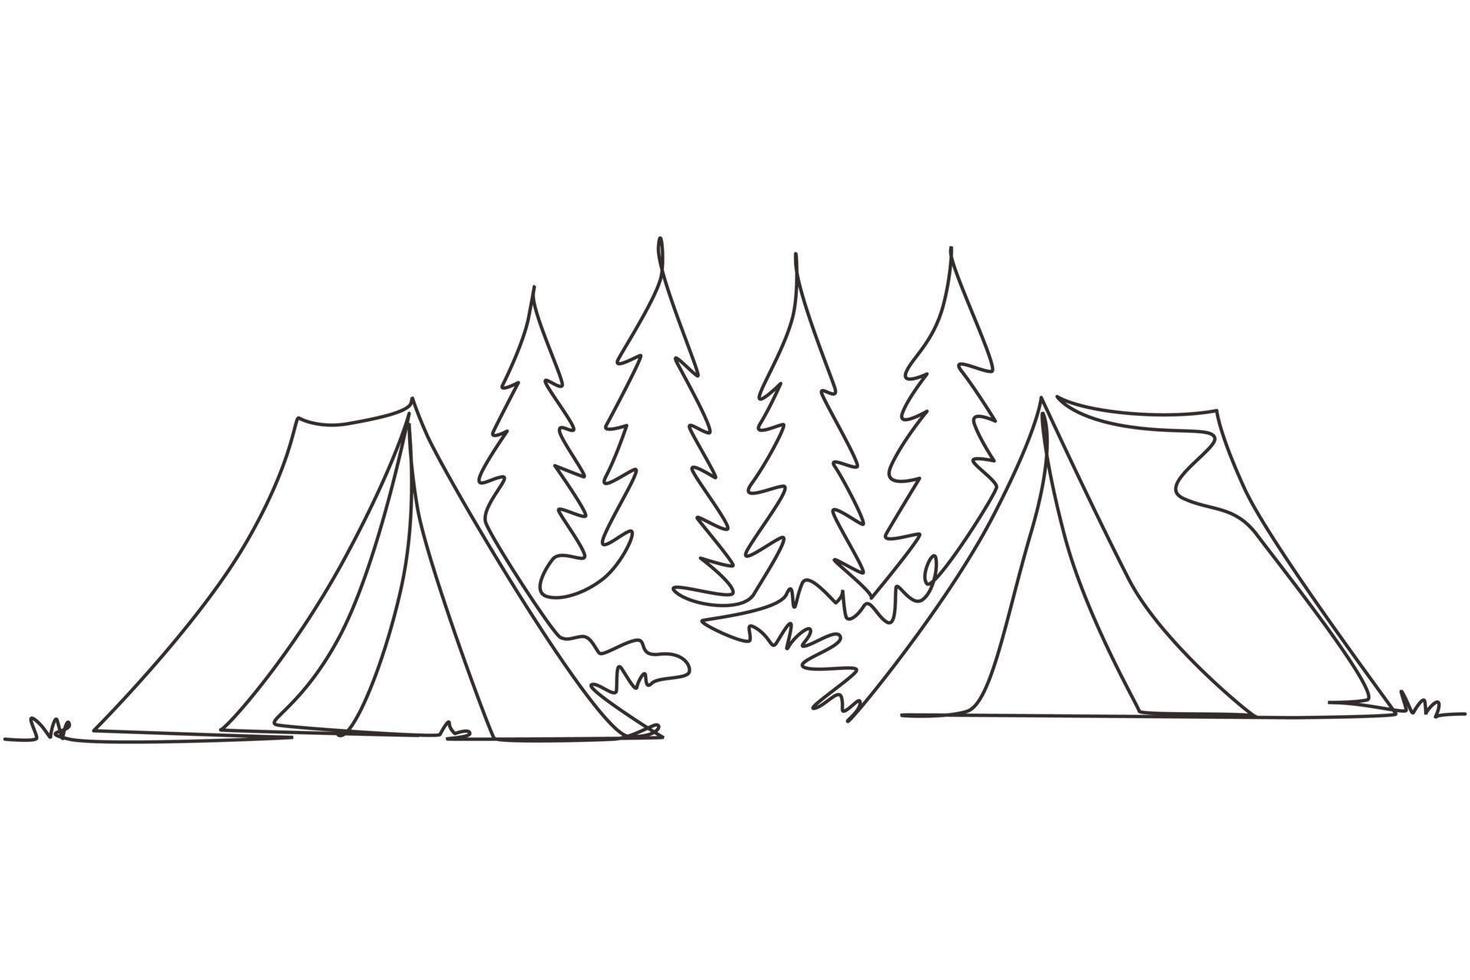 una linea continua disegnando due tende da campeggio spedizione turistica in montagna nella foresta di pini. concetto di viaggio, avventura, natura, spedizione e vacanza. illustrazione grafica vettoriale di disegno a linea singola